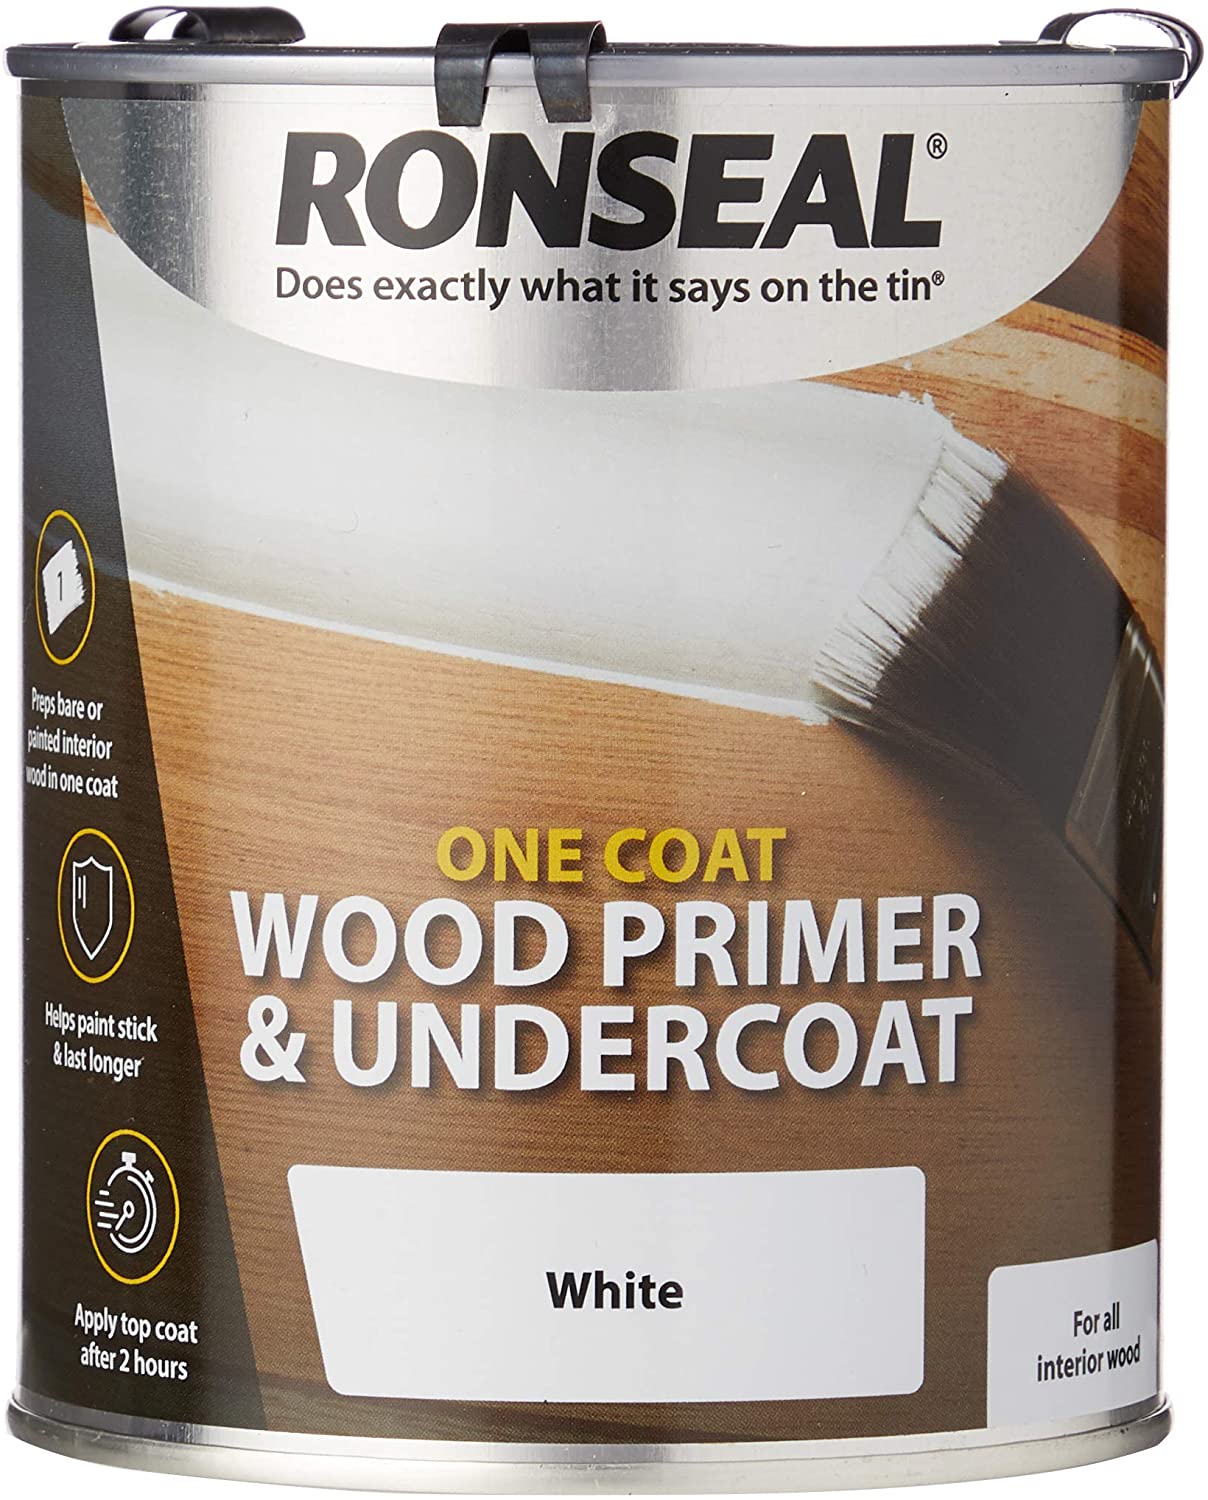 Ronseal One Coat Wood Primer & Undercoat